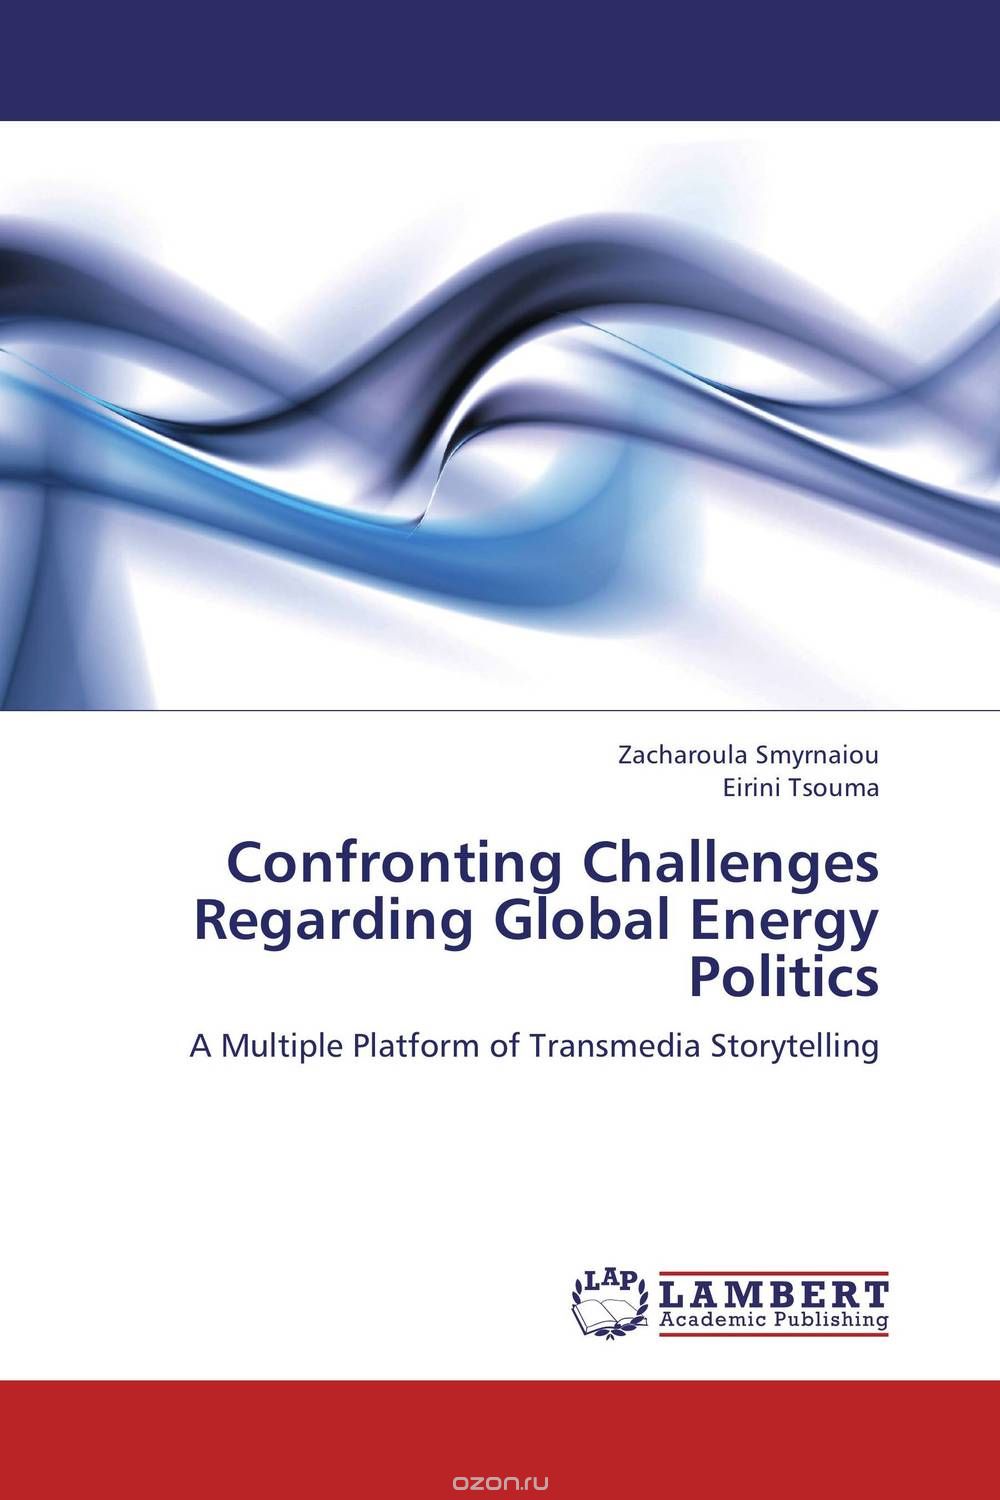 Скачать книгу "Confronting Challenges Regarding Global Energy Politics"